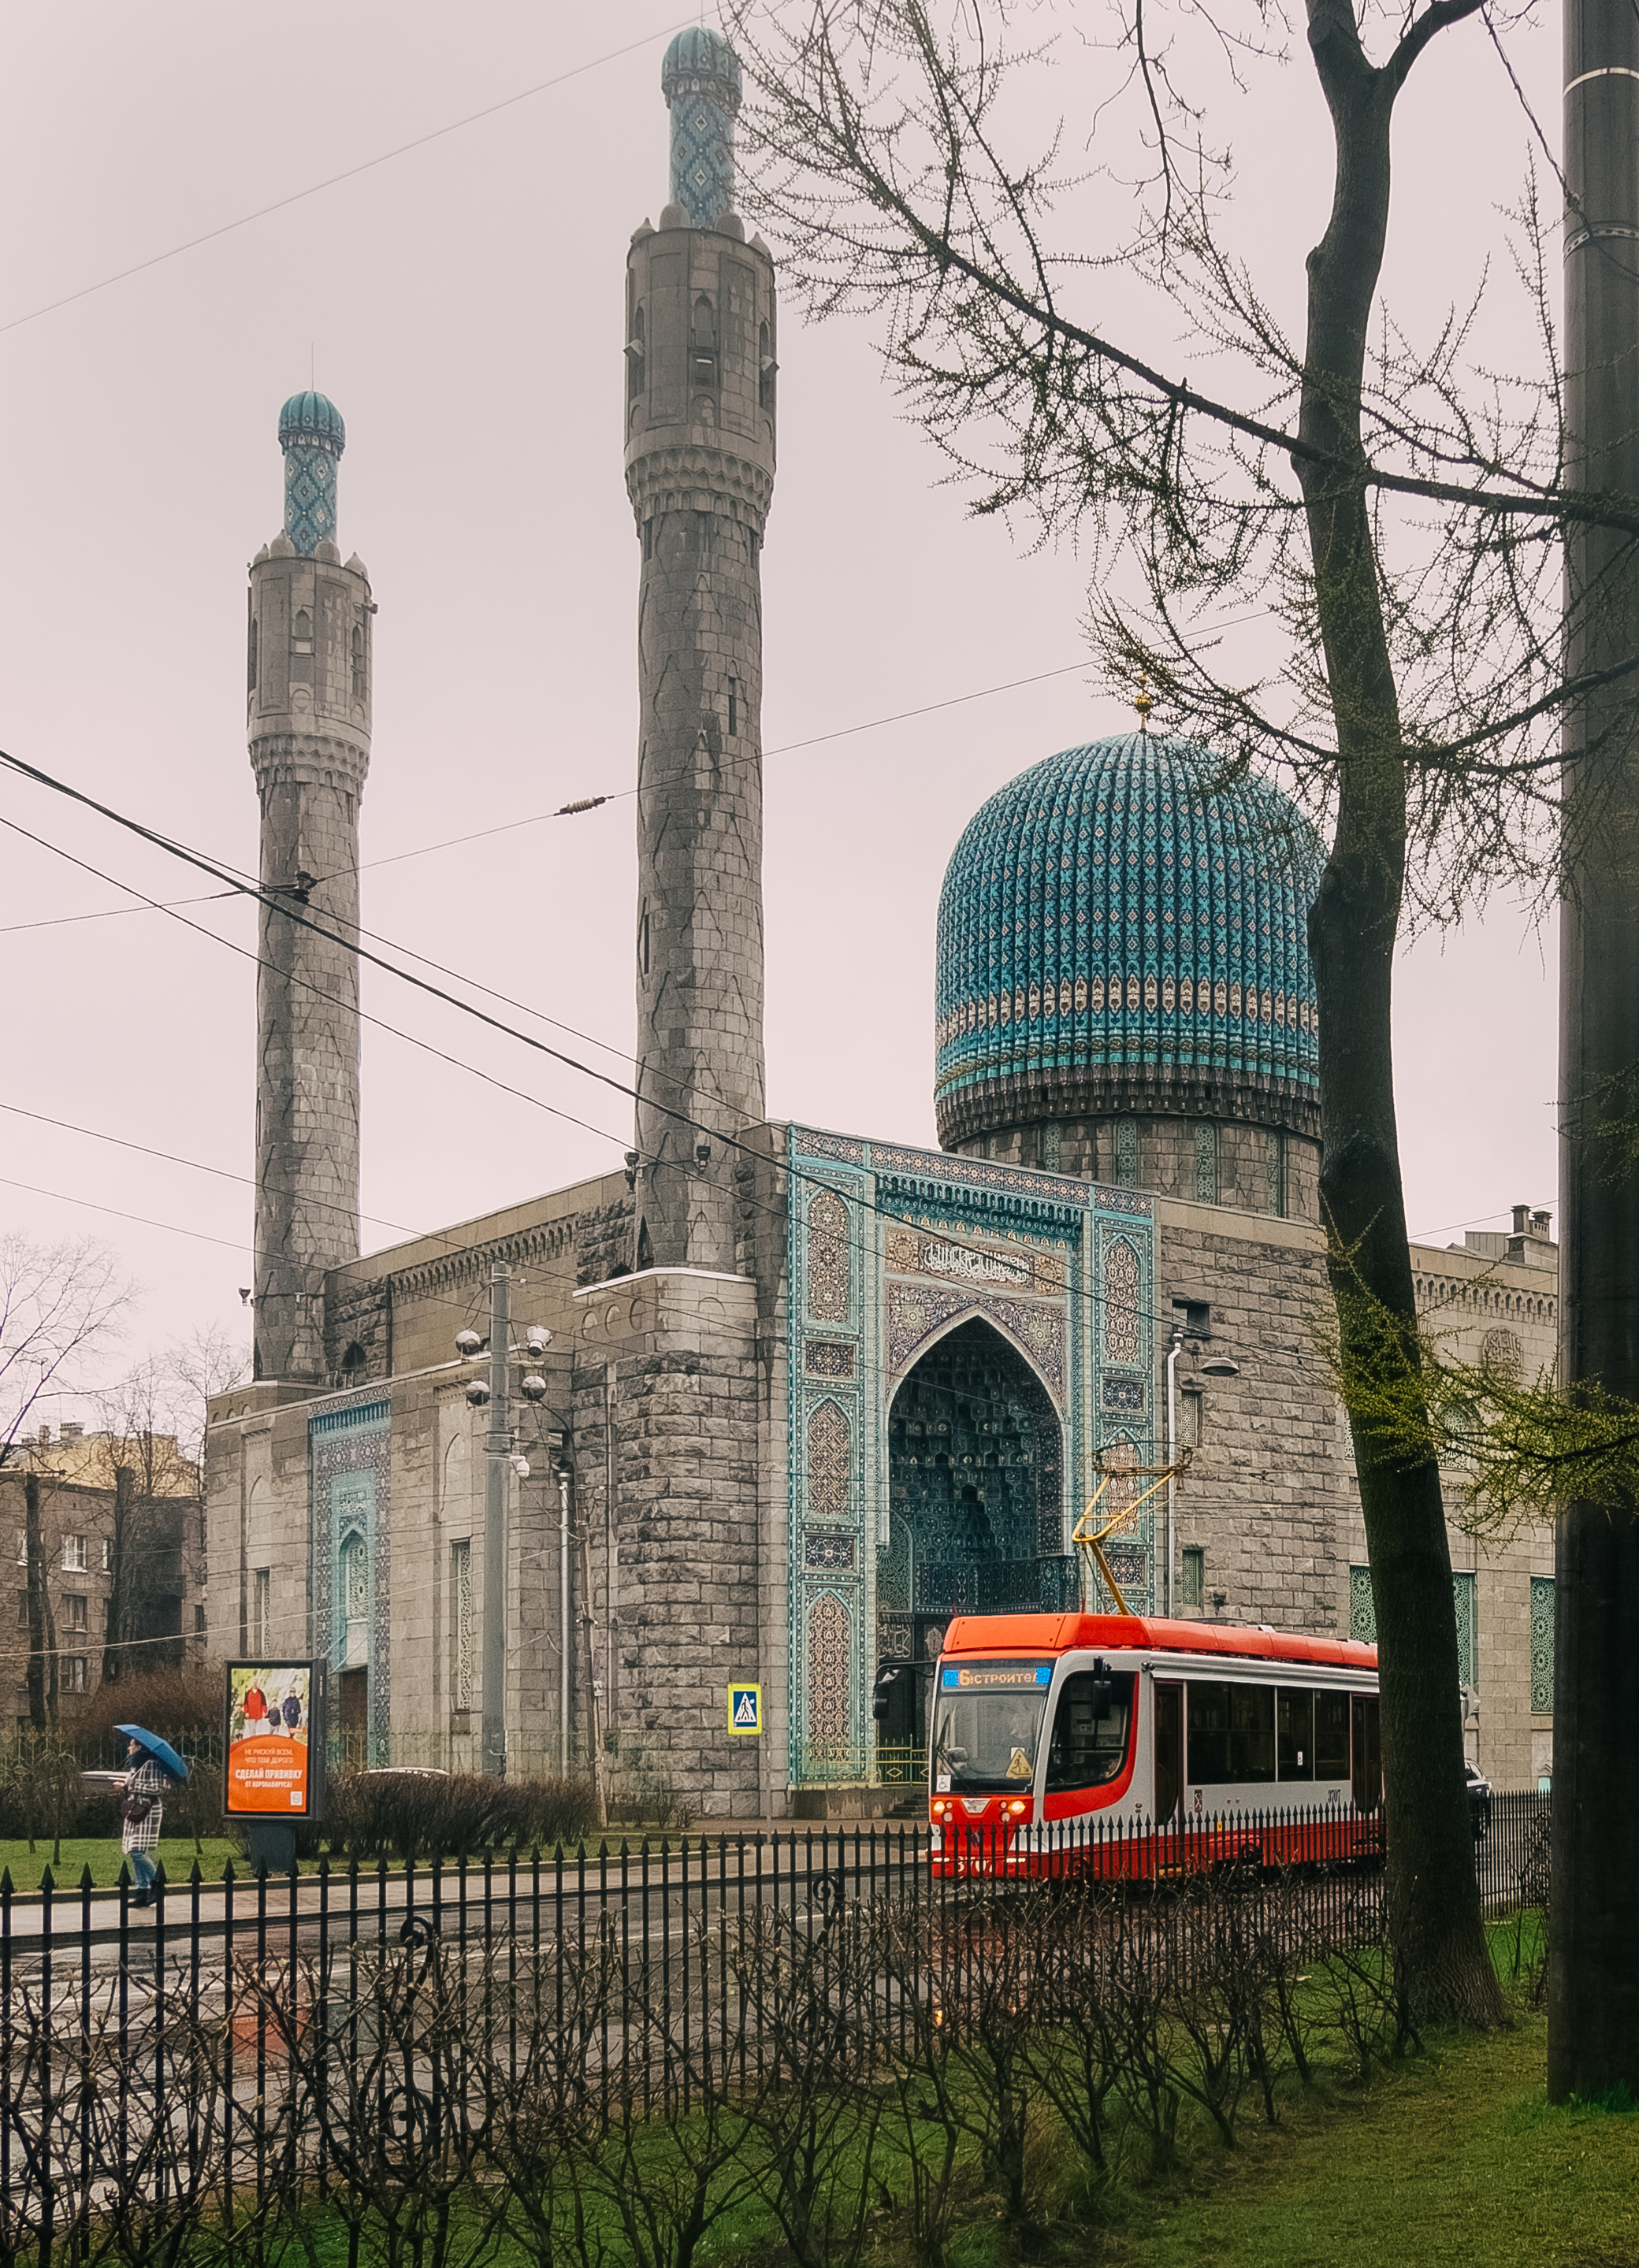 Санкт-Петербургская соборная мечеть.